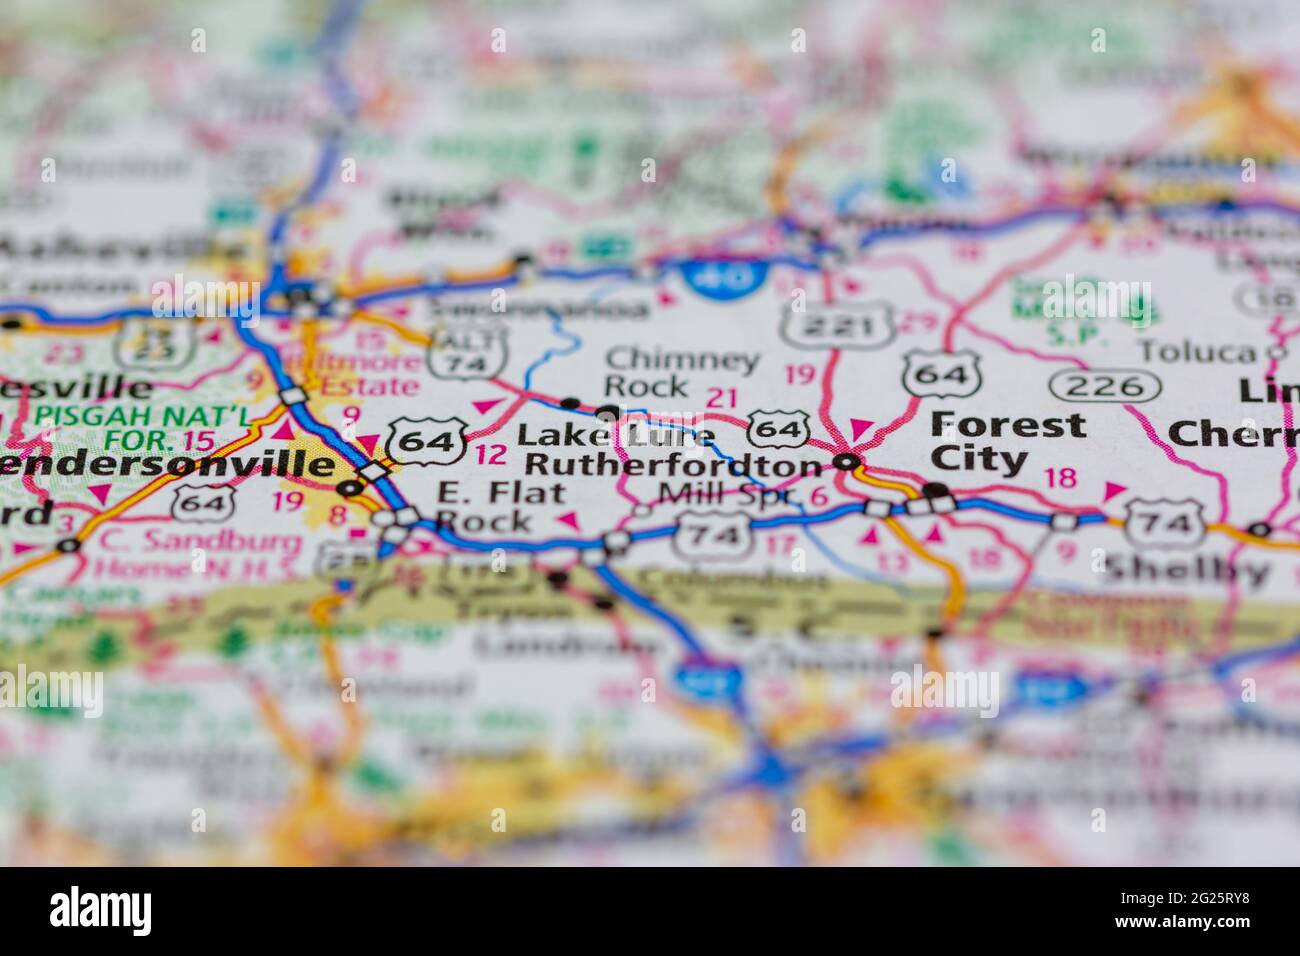 Lake Lure North Carolina USA auf einer Road- oder Geografie-Karte angezeigt Stockfoto